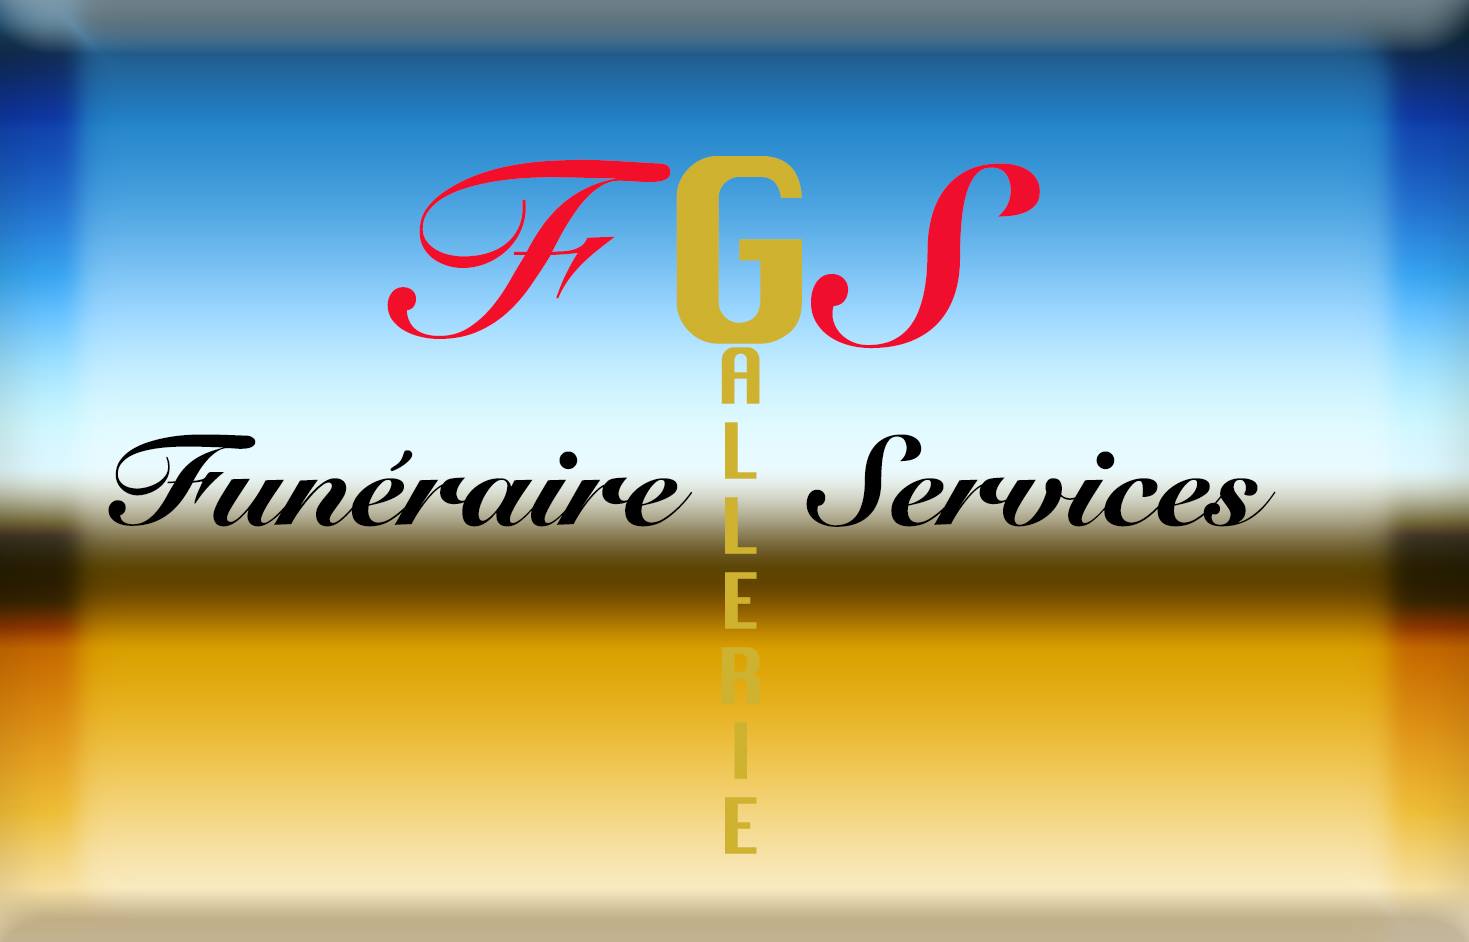 Logo Funéraire Galerie Services